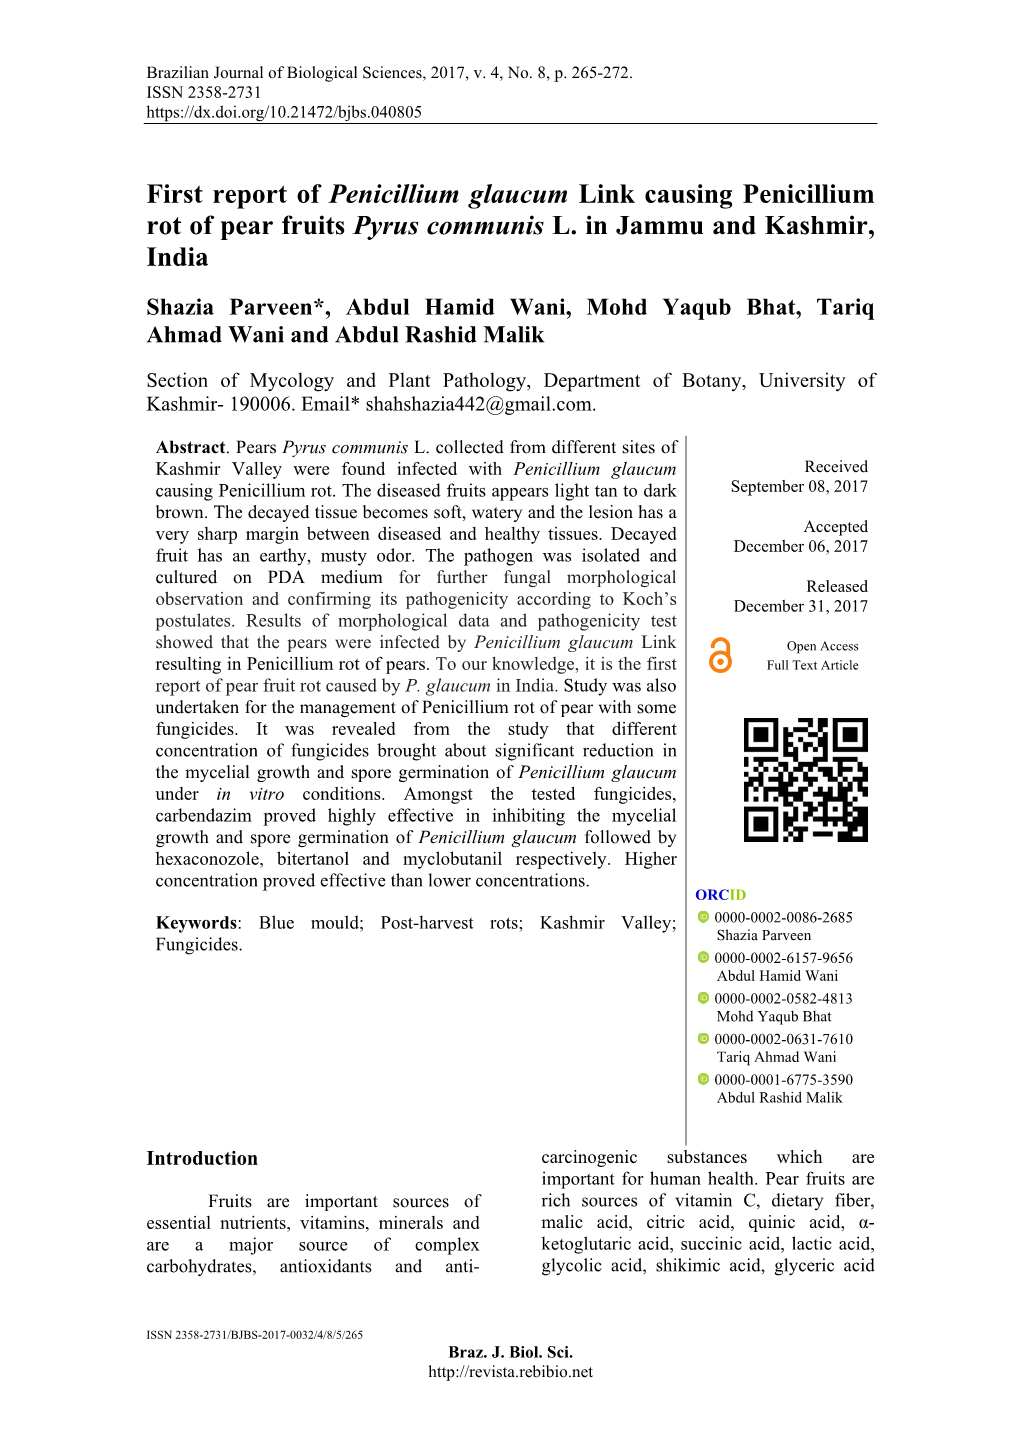 First Report of Penicillium Glaucum Link Causing Penicillium Rot of Pear Fruits Pyrus Communis L